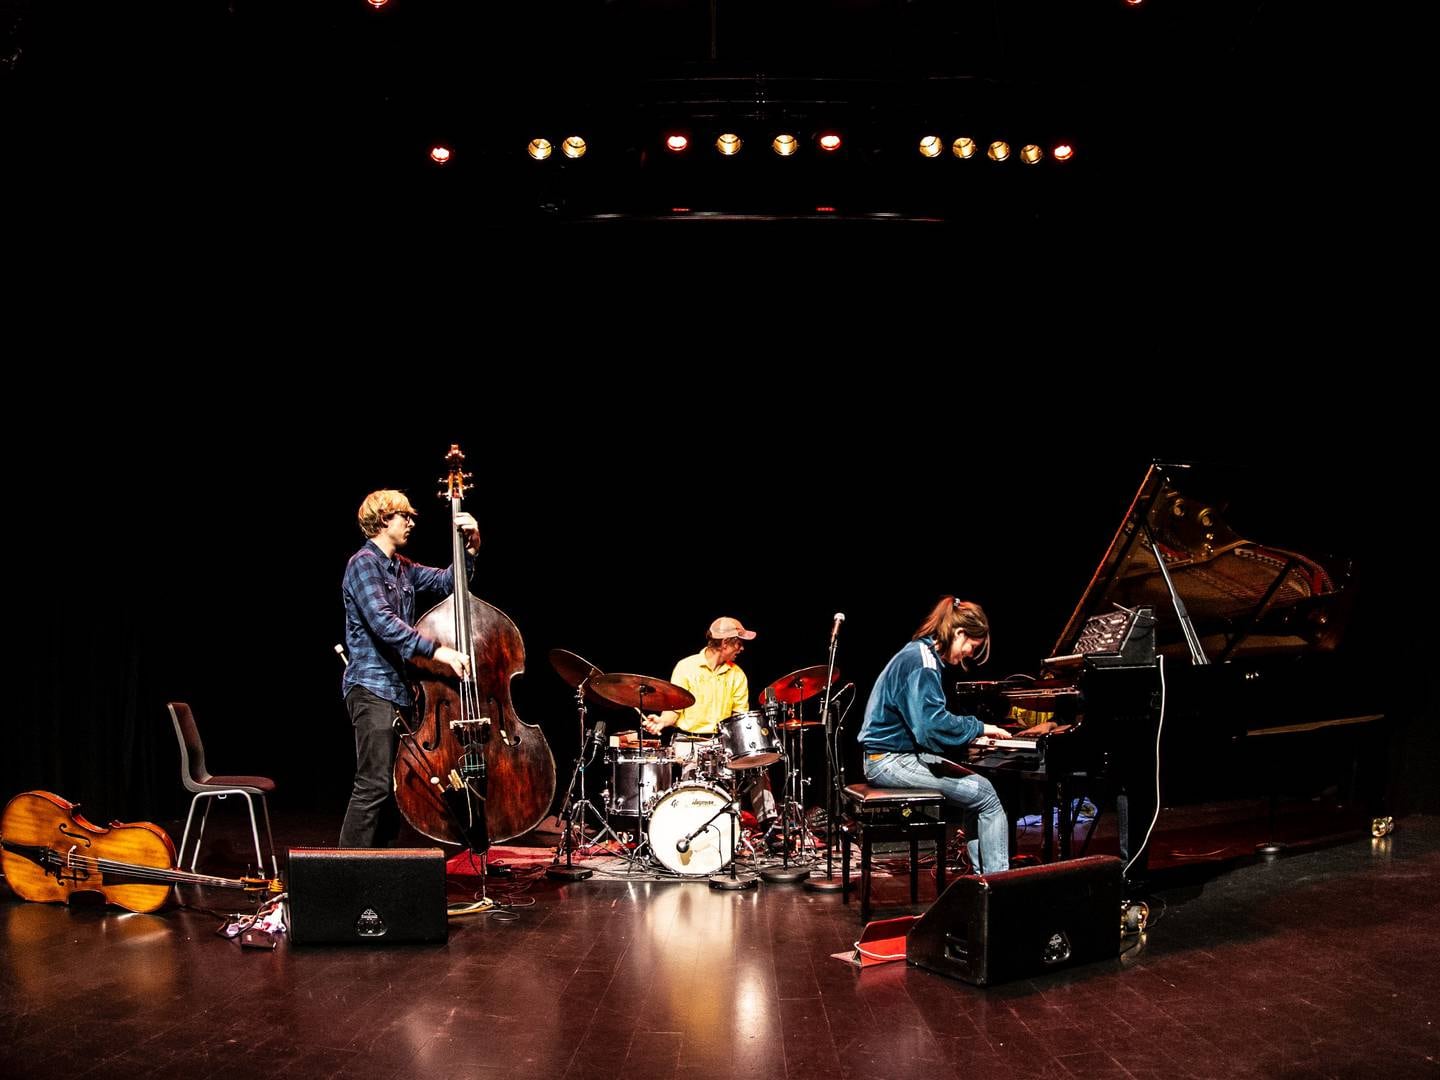 Trioen Moskus lagde et av årets beste jazzalbum (igjen).